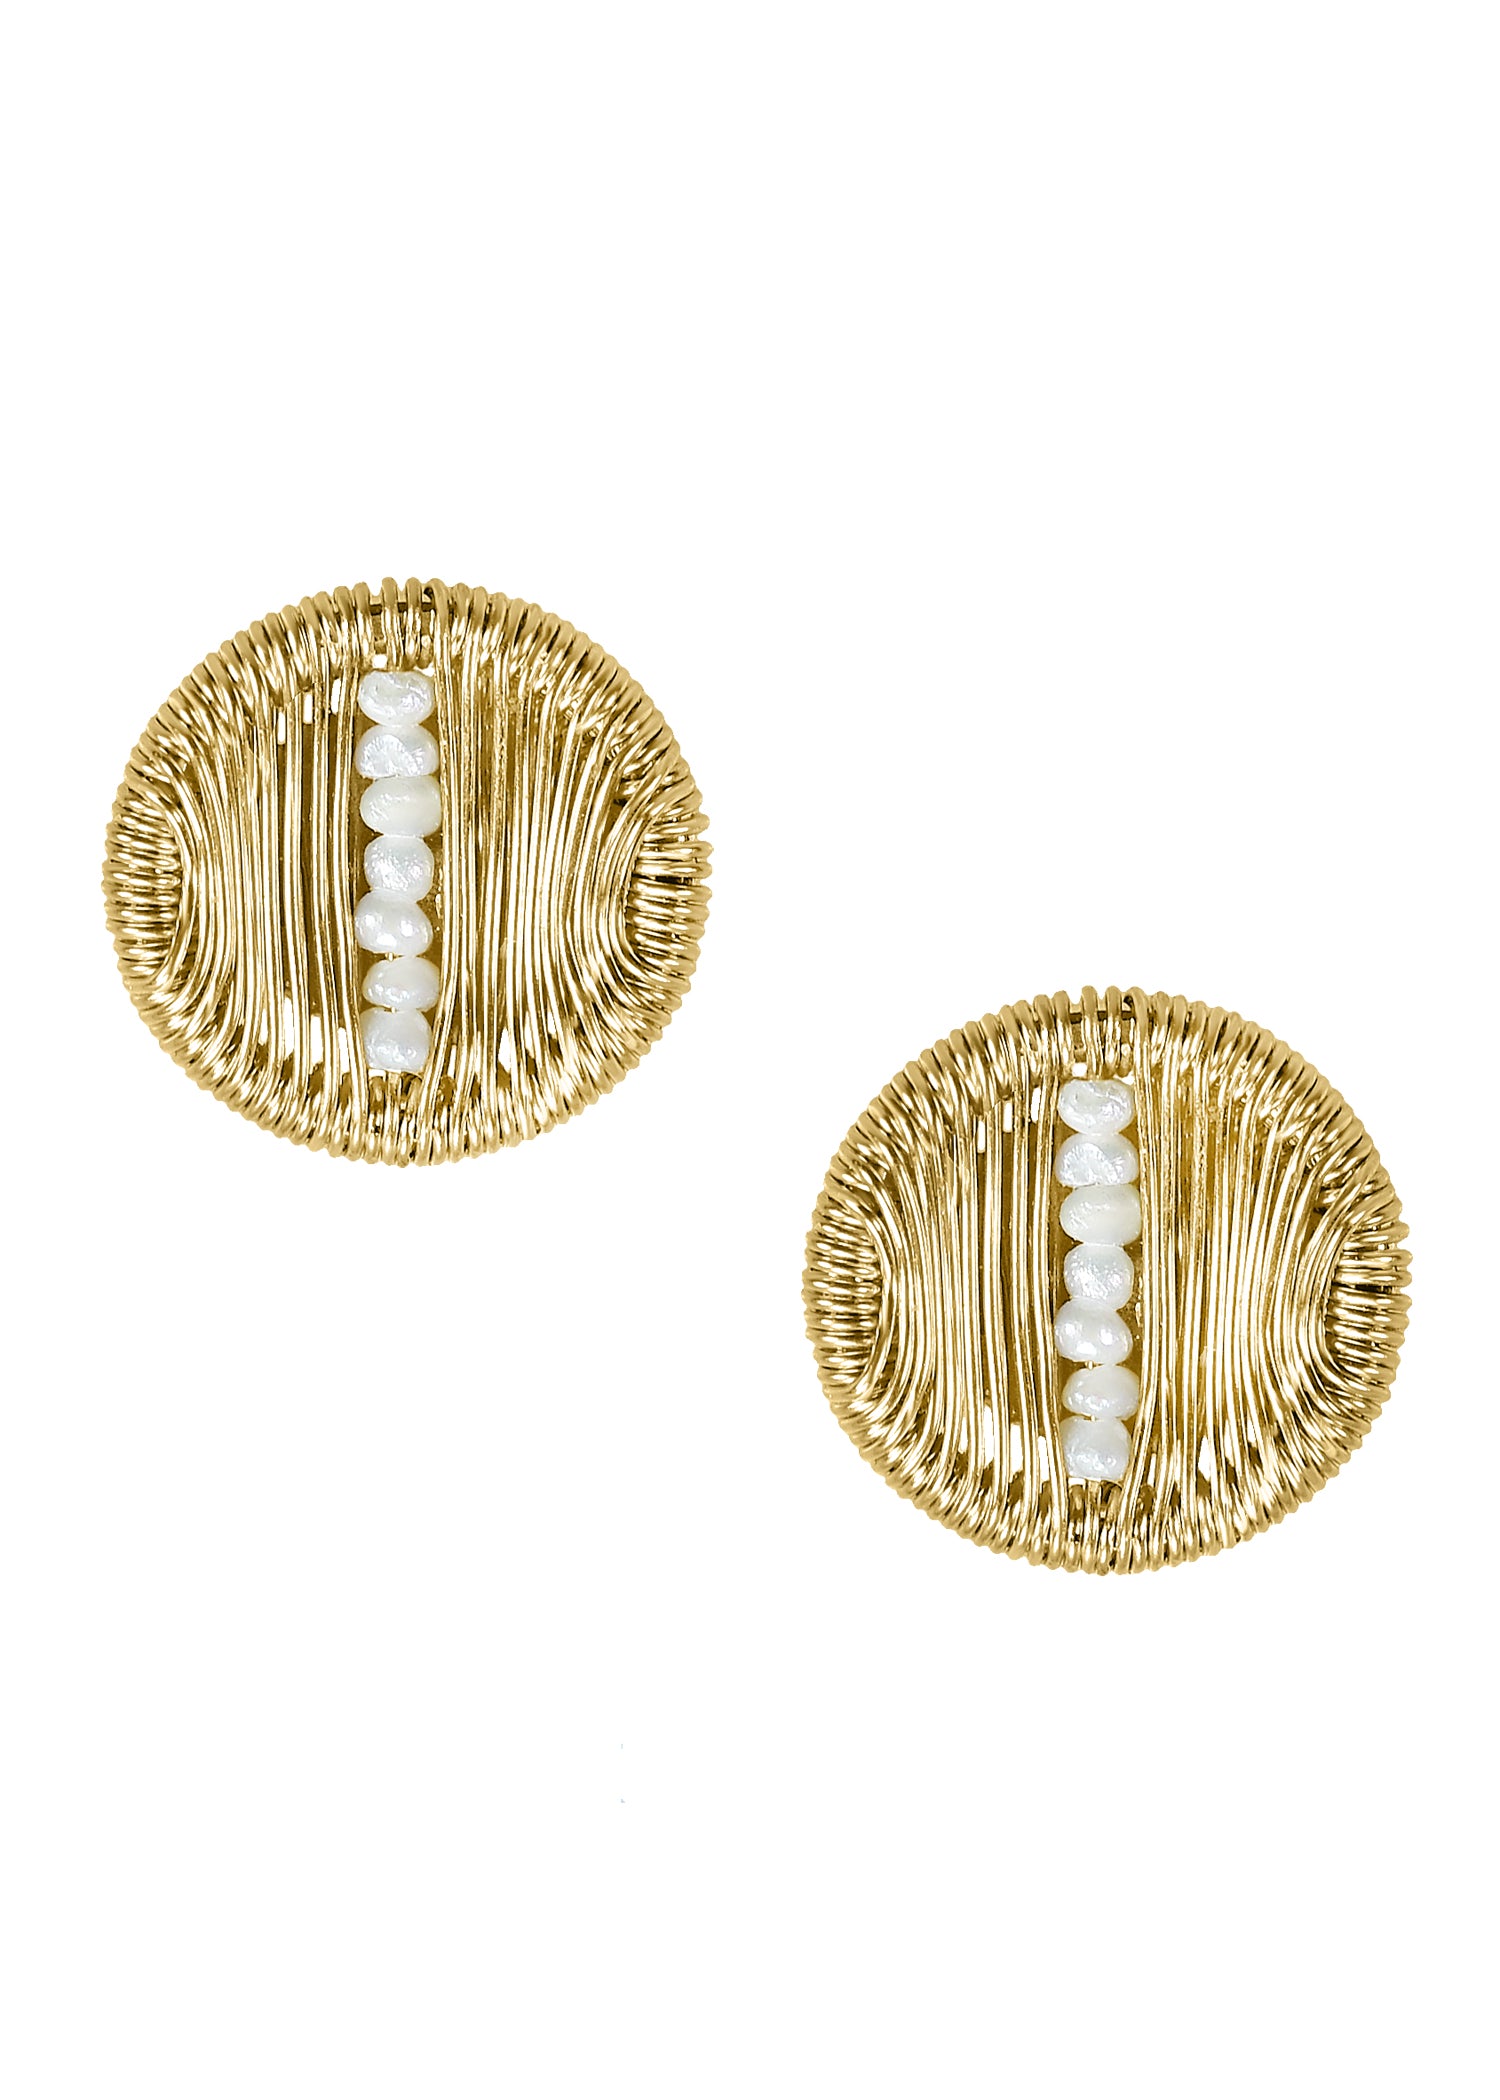 Freshwater pearl 14k gold fill Posts Earrings measure 7/16" in diameter Handmade in our Los Angeles studio